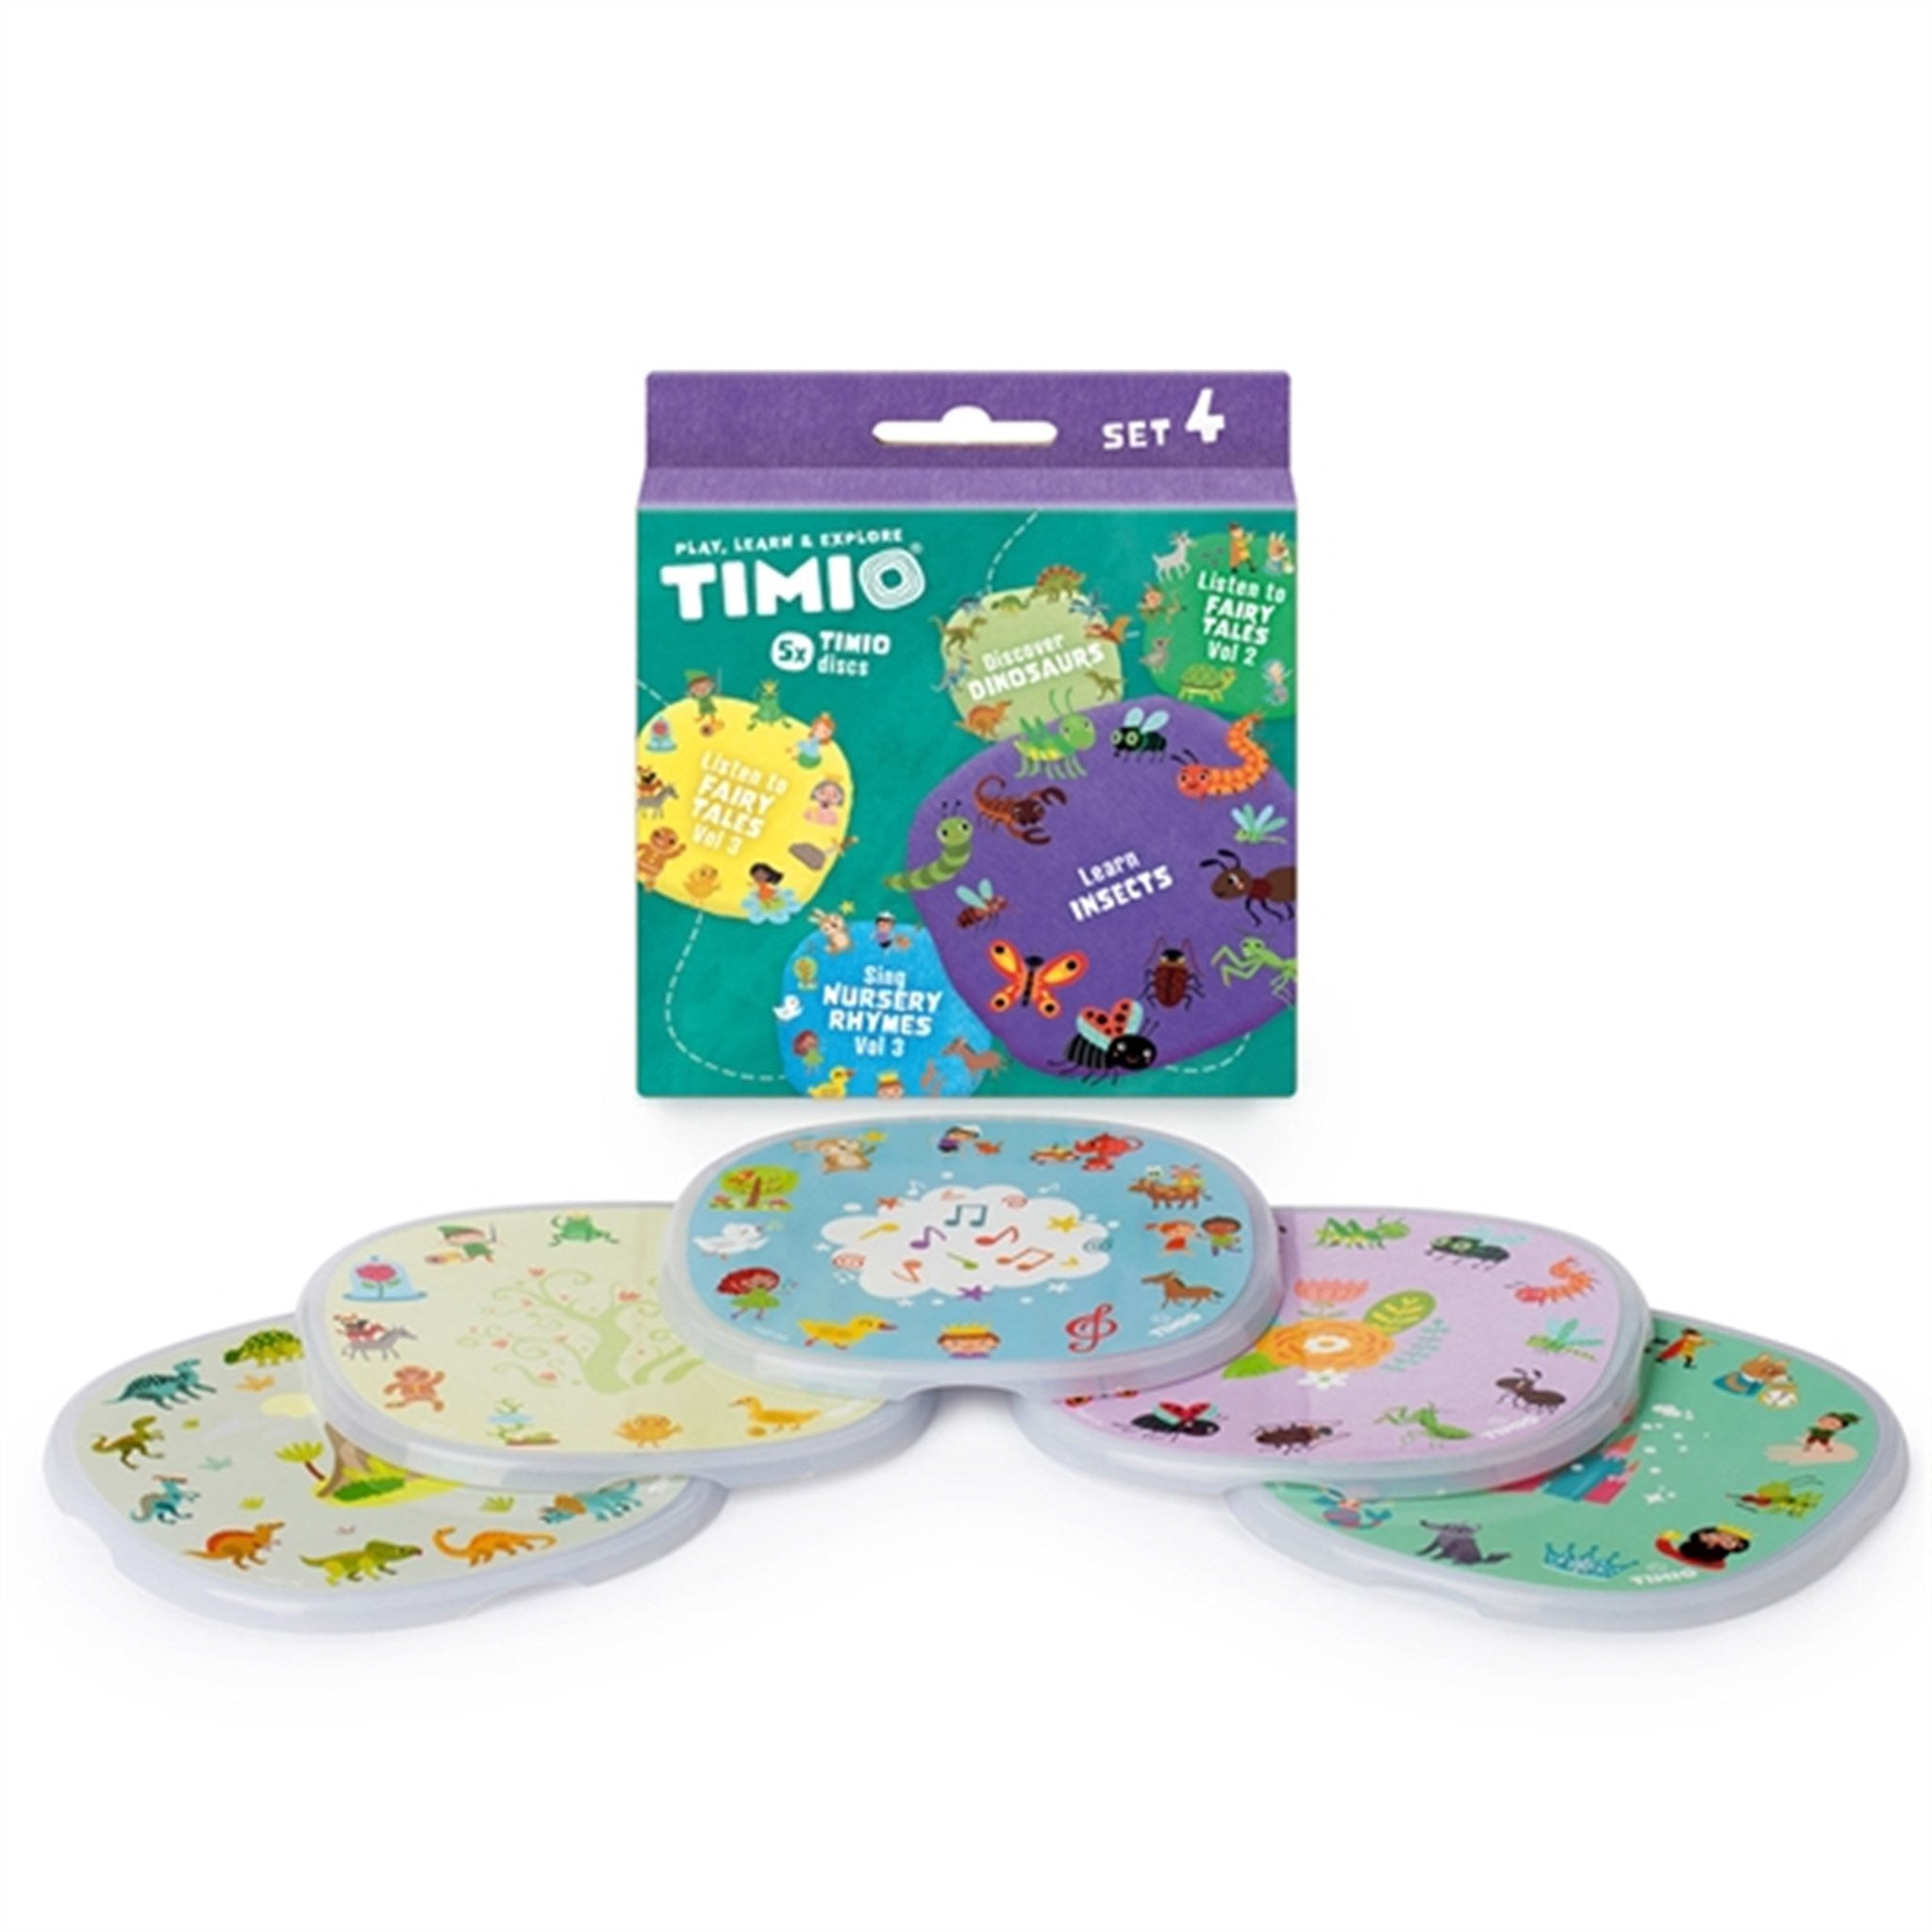 TIMIO® Disc Sæt 4 - Børnesange, Eventyr, Dinosaurer og Små Insekter